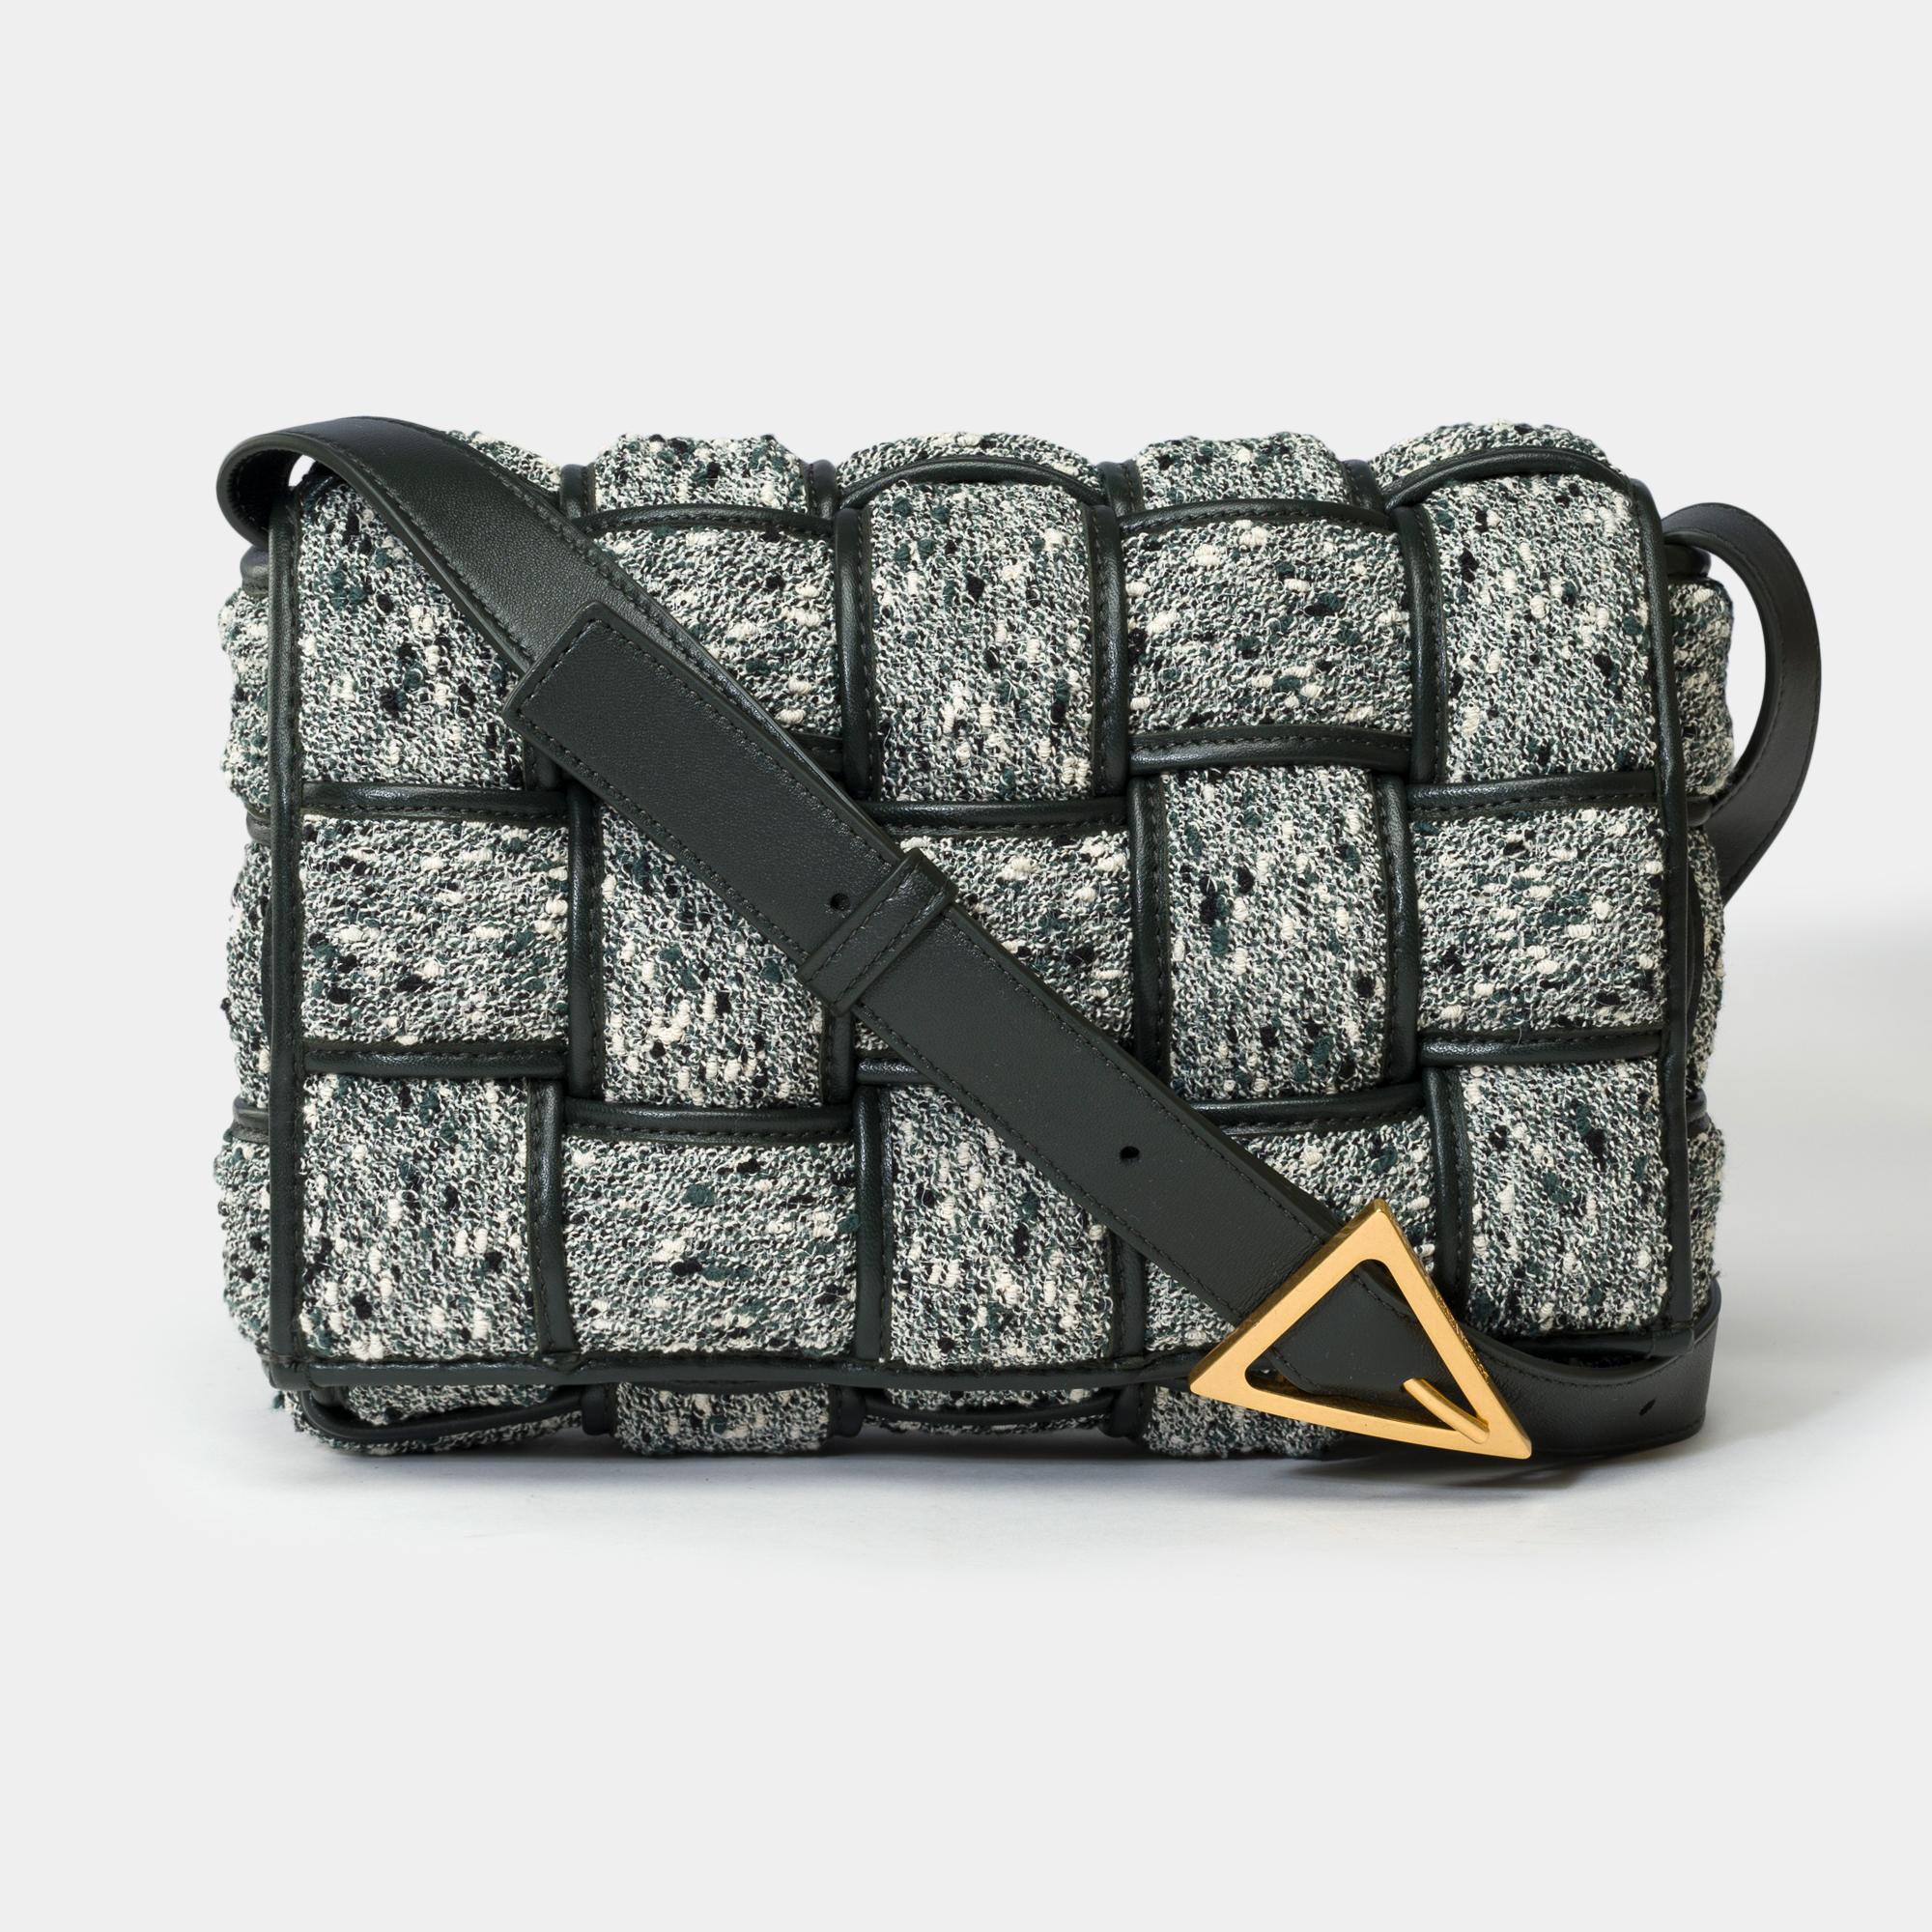 Die Cassette Crossbody Bag von Bottega Veneta ist aus grauem und grünem gepolstertem Tweed mit einer Innenausstattung aus schwarzem Lammleder, goldenen Metallverzierungen und einem verstellbaren Schulterriemen aus schwarzem Leder, der sich sowohl